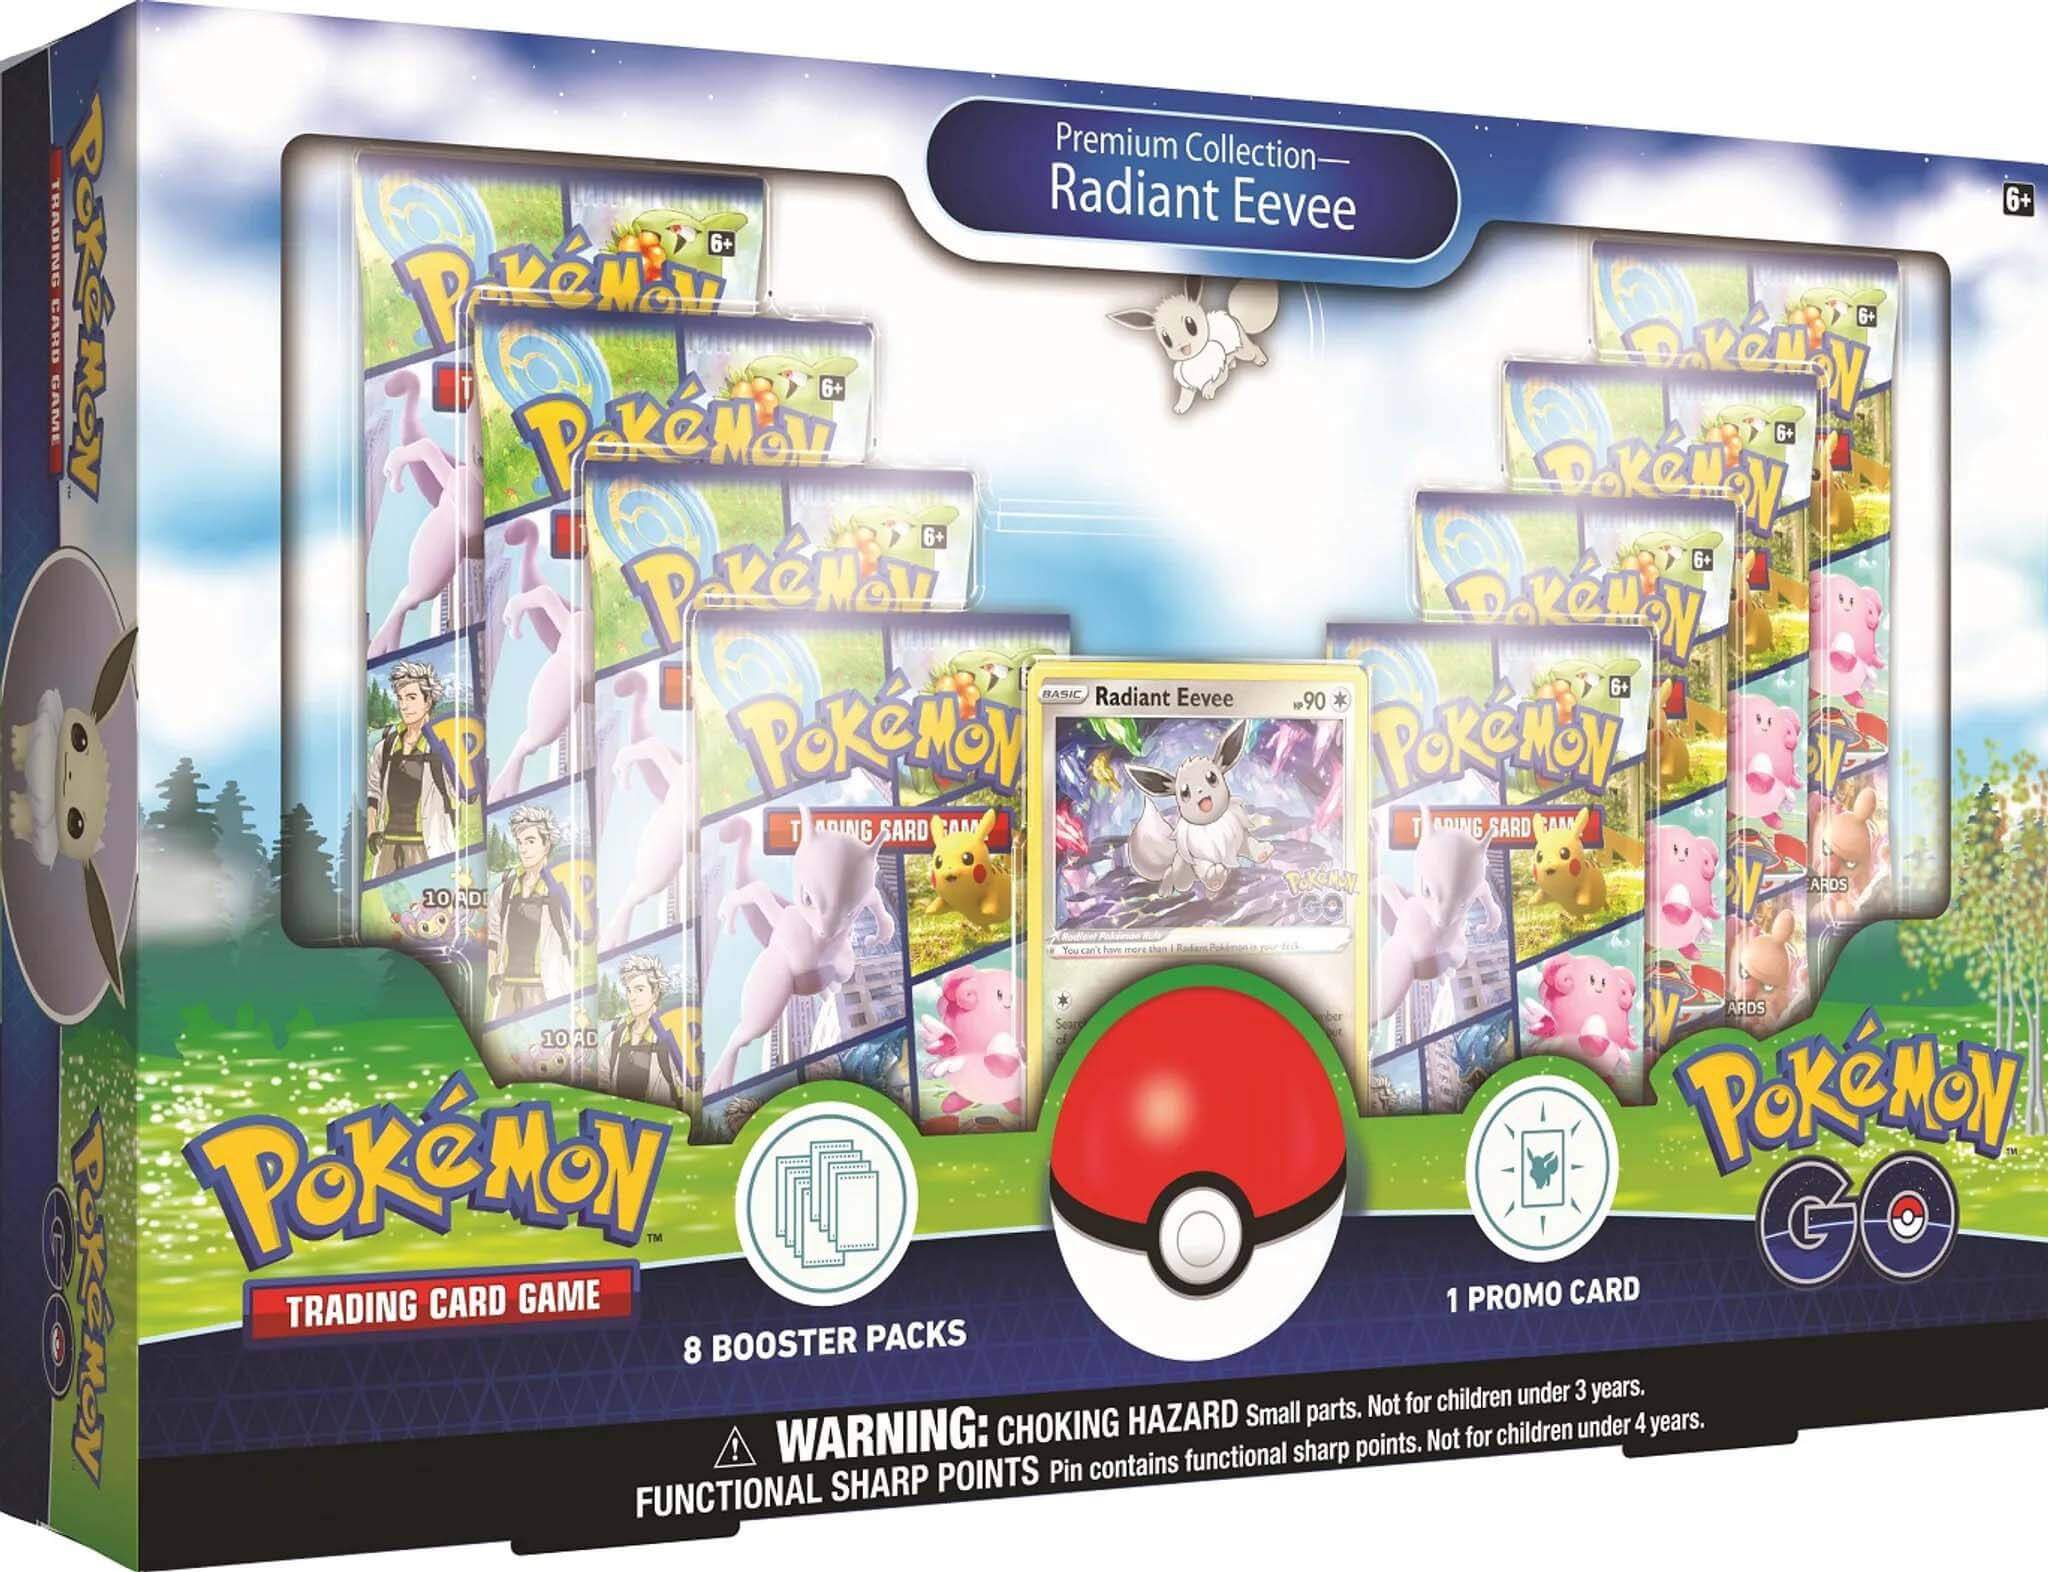 Pokémon GO - Premium Collection Radiant Eevee